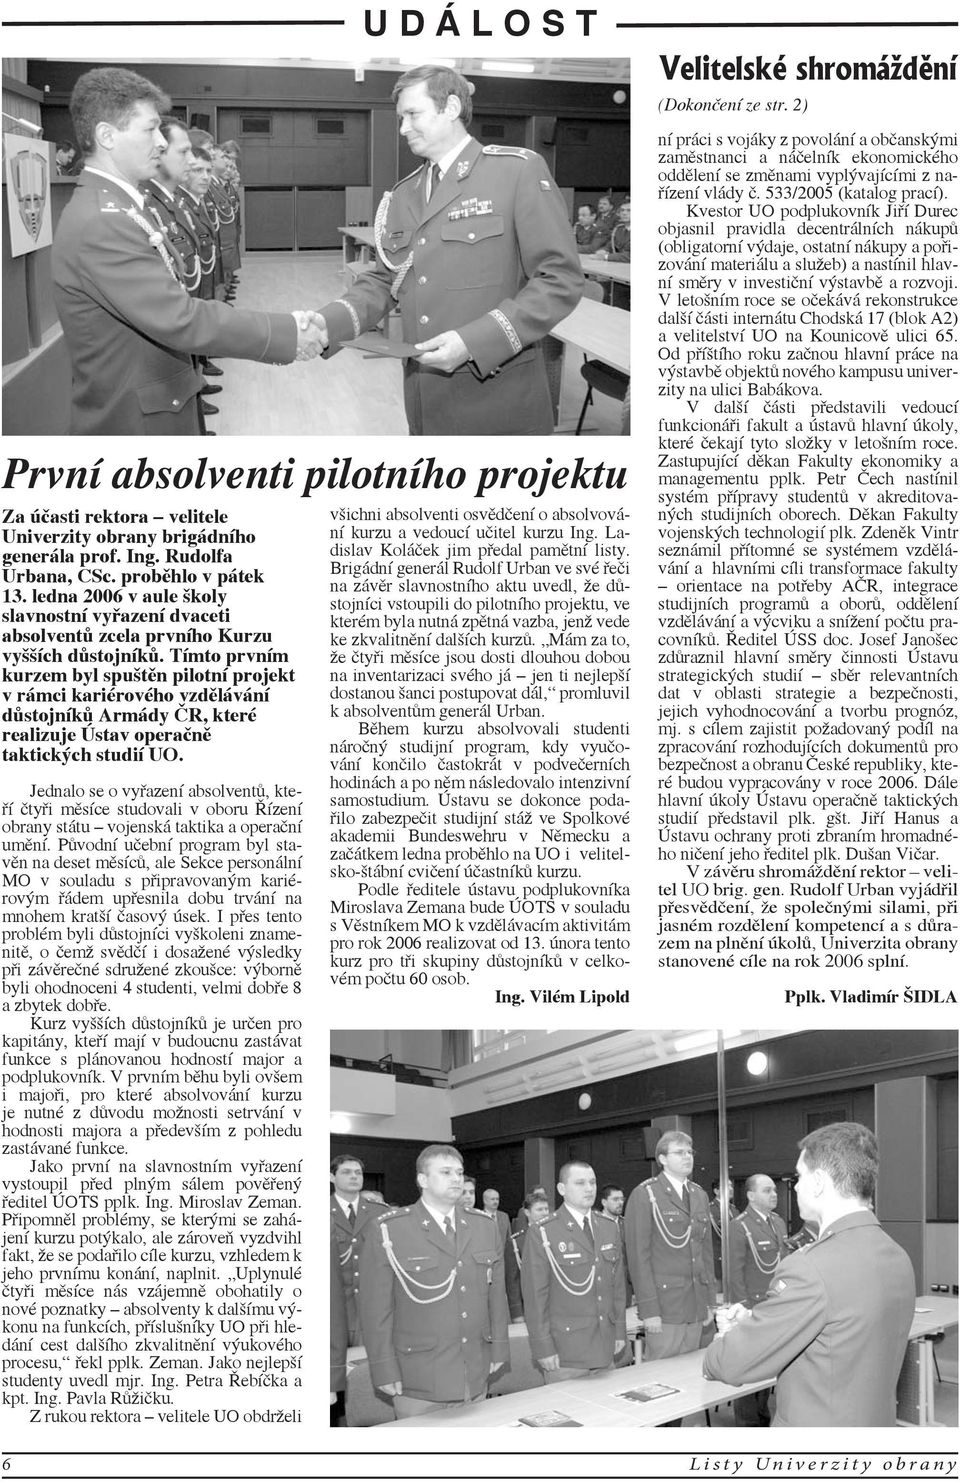 Tímto prvním kurzem byl spuštěn pilotní projekt v rámci kariérového vzdělávání důstojníků Armády ČR, které realizuje Ústav operačně taktických studií UO.